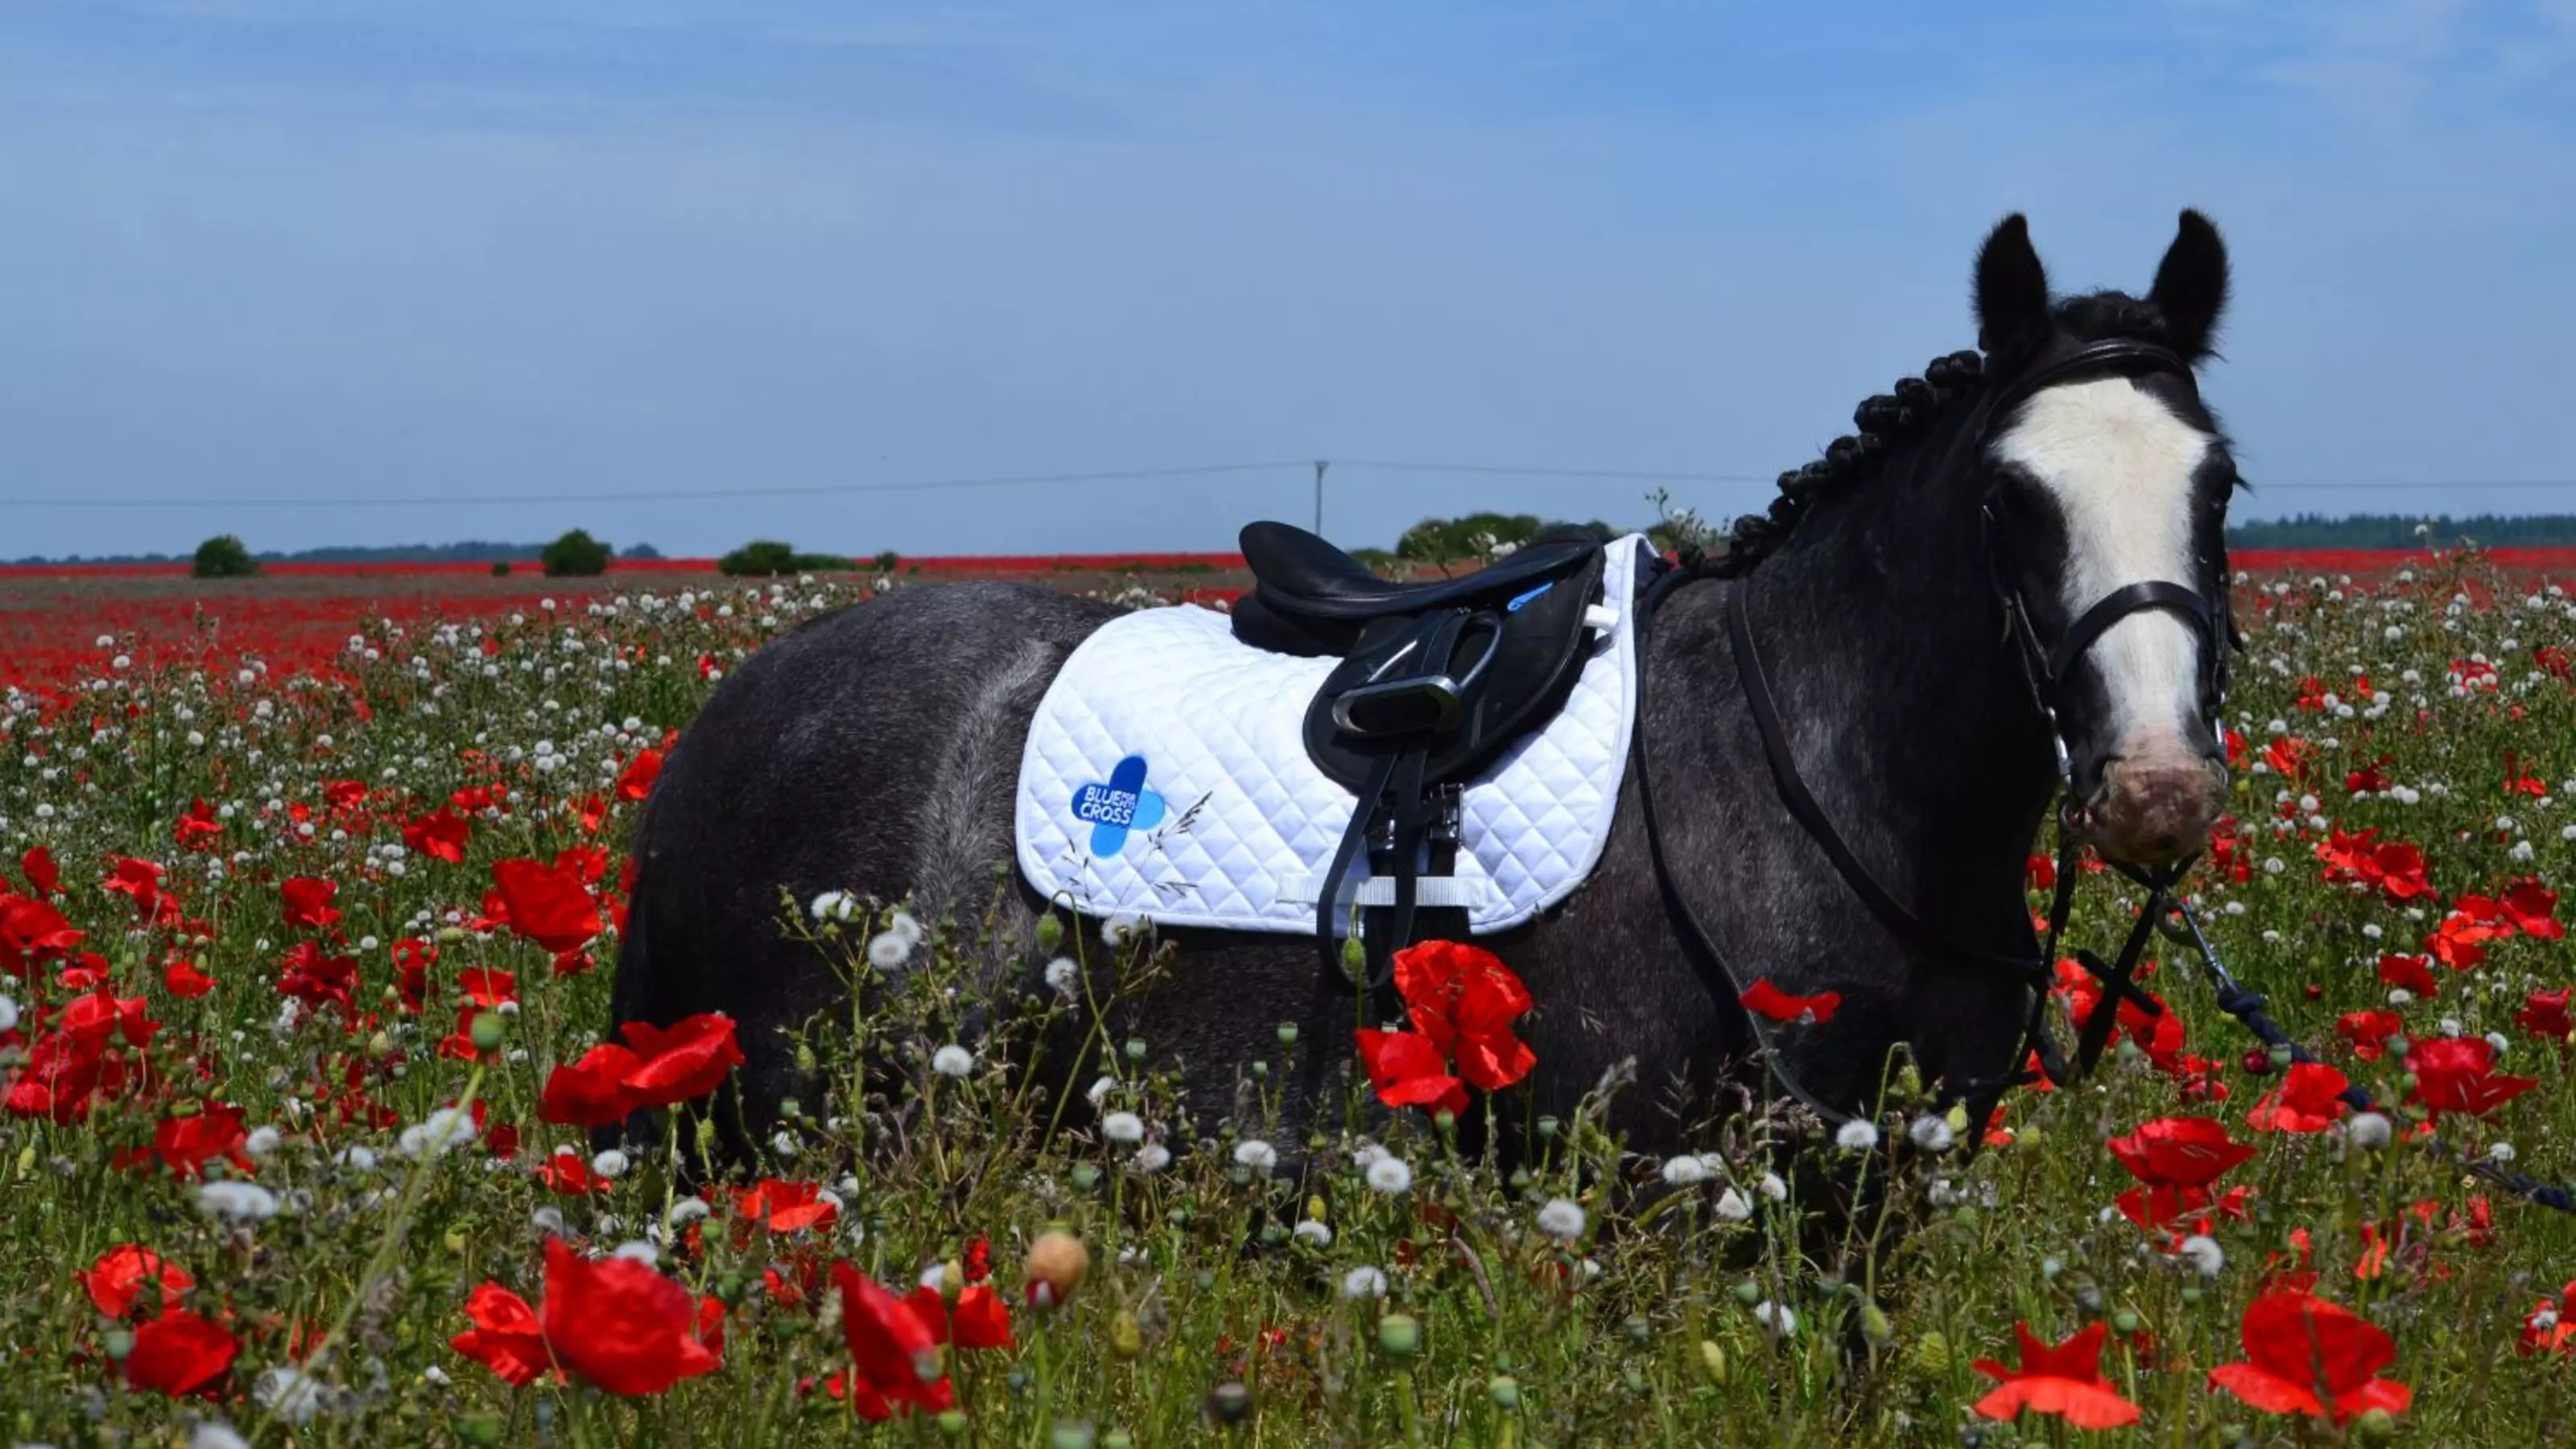 Blue Cross pony standing in a field of flowers